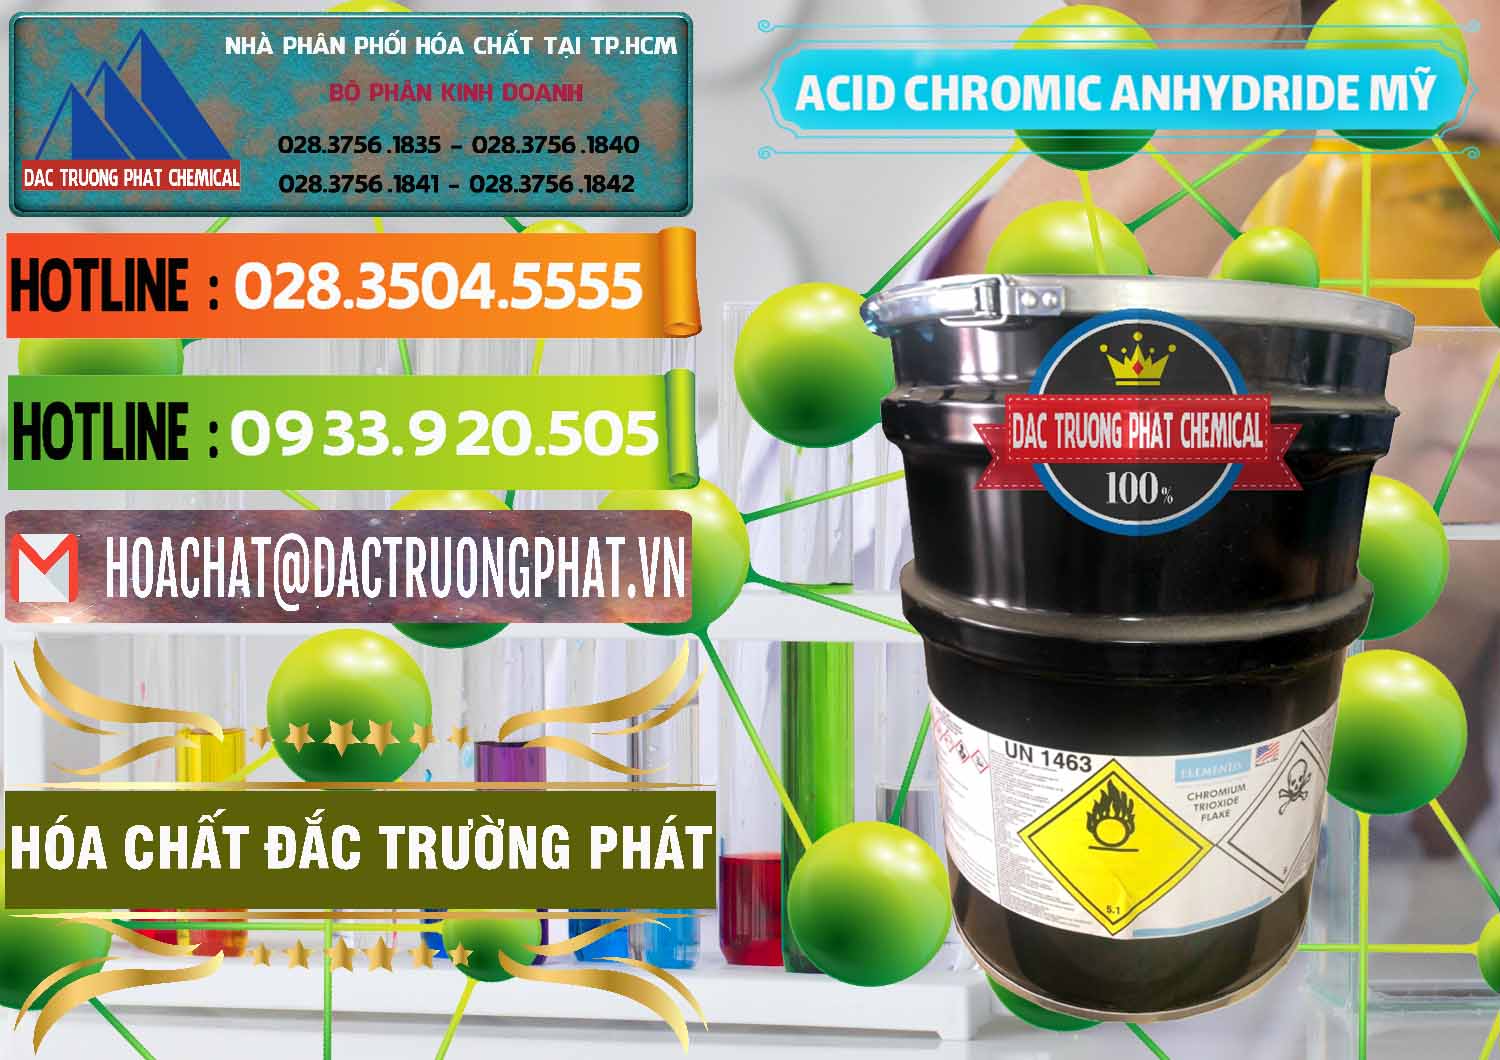 Cty chuyên phân phối & bán Acid Chromic Anhydride - Cromic CRO3 USA Mỹ - 0364 - Cung ứng - phân phối hóa chất tại TP.HCM - cungcaphoachat.com.vn